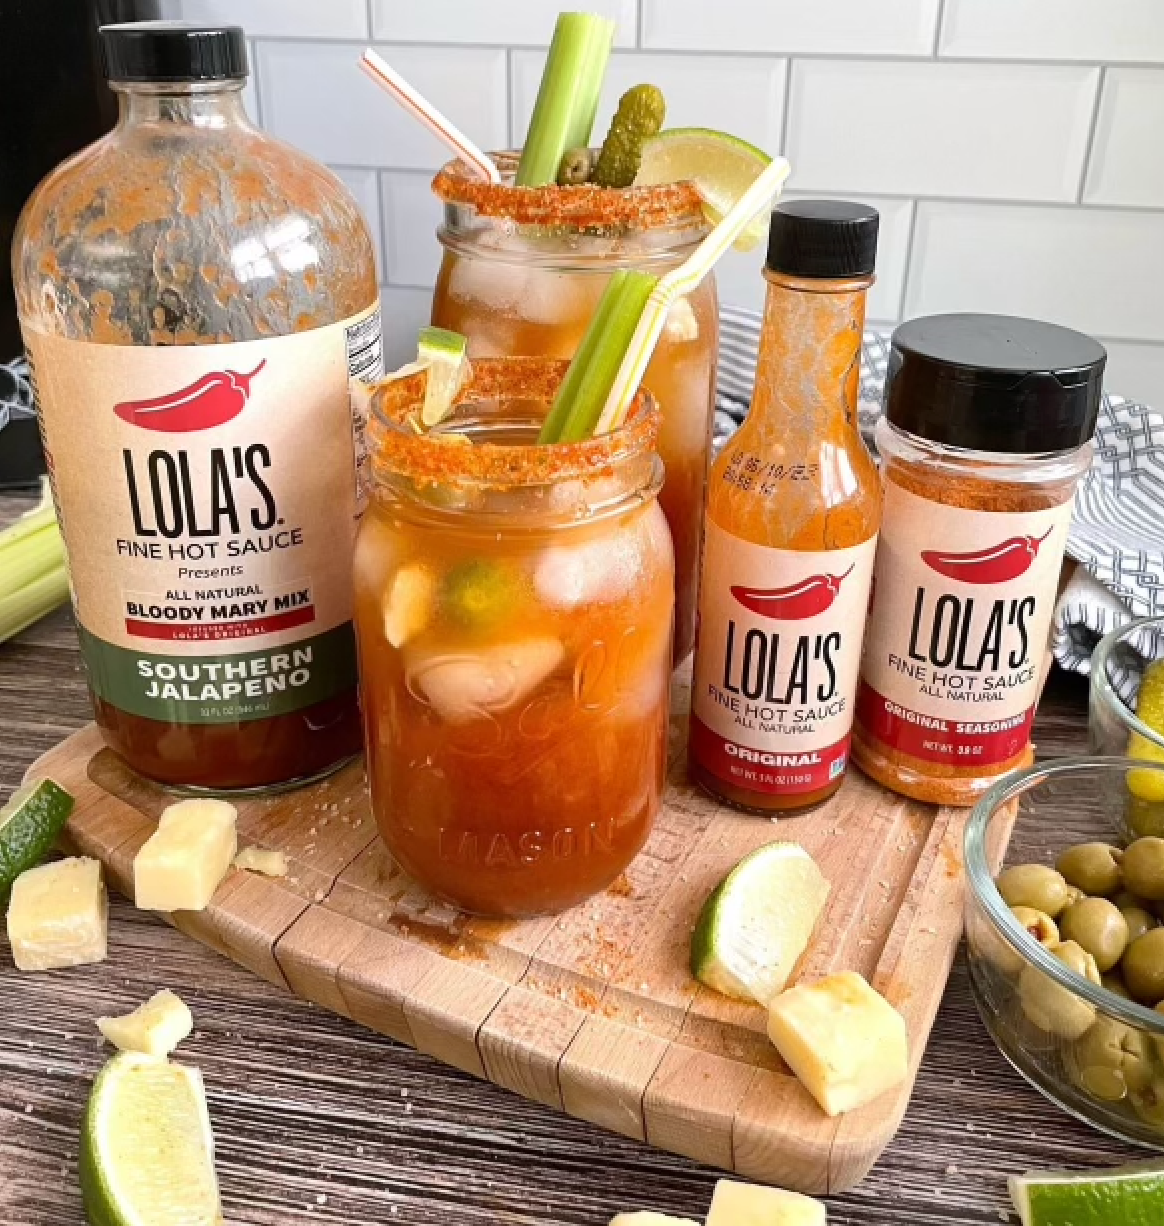 Lola's Bloody Mary